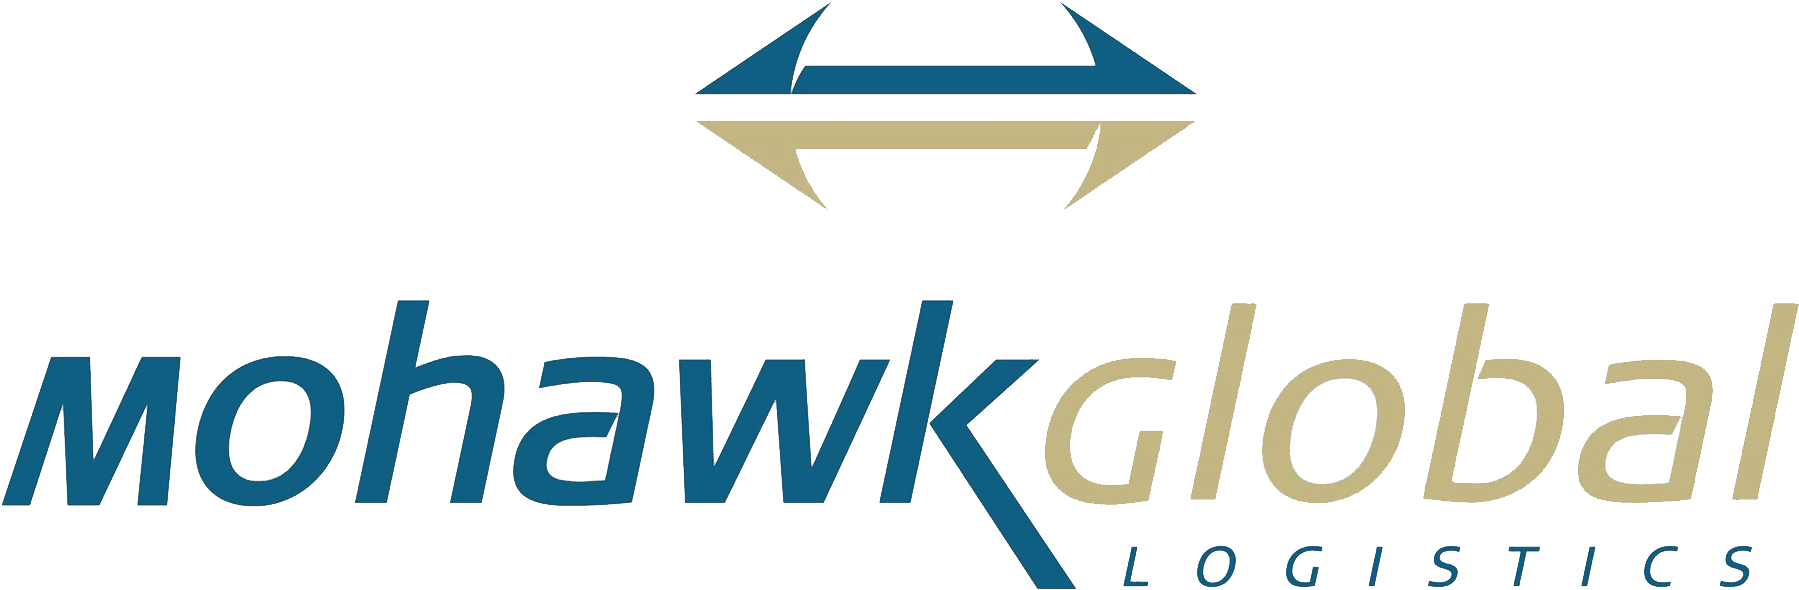 Mohawk Global Logistics Logo PNG image